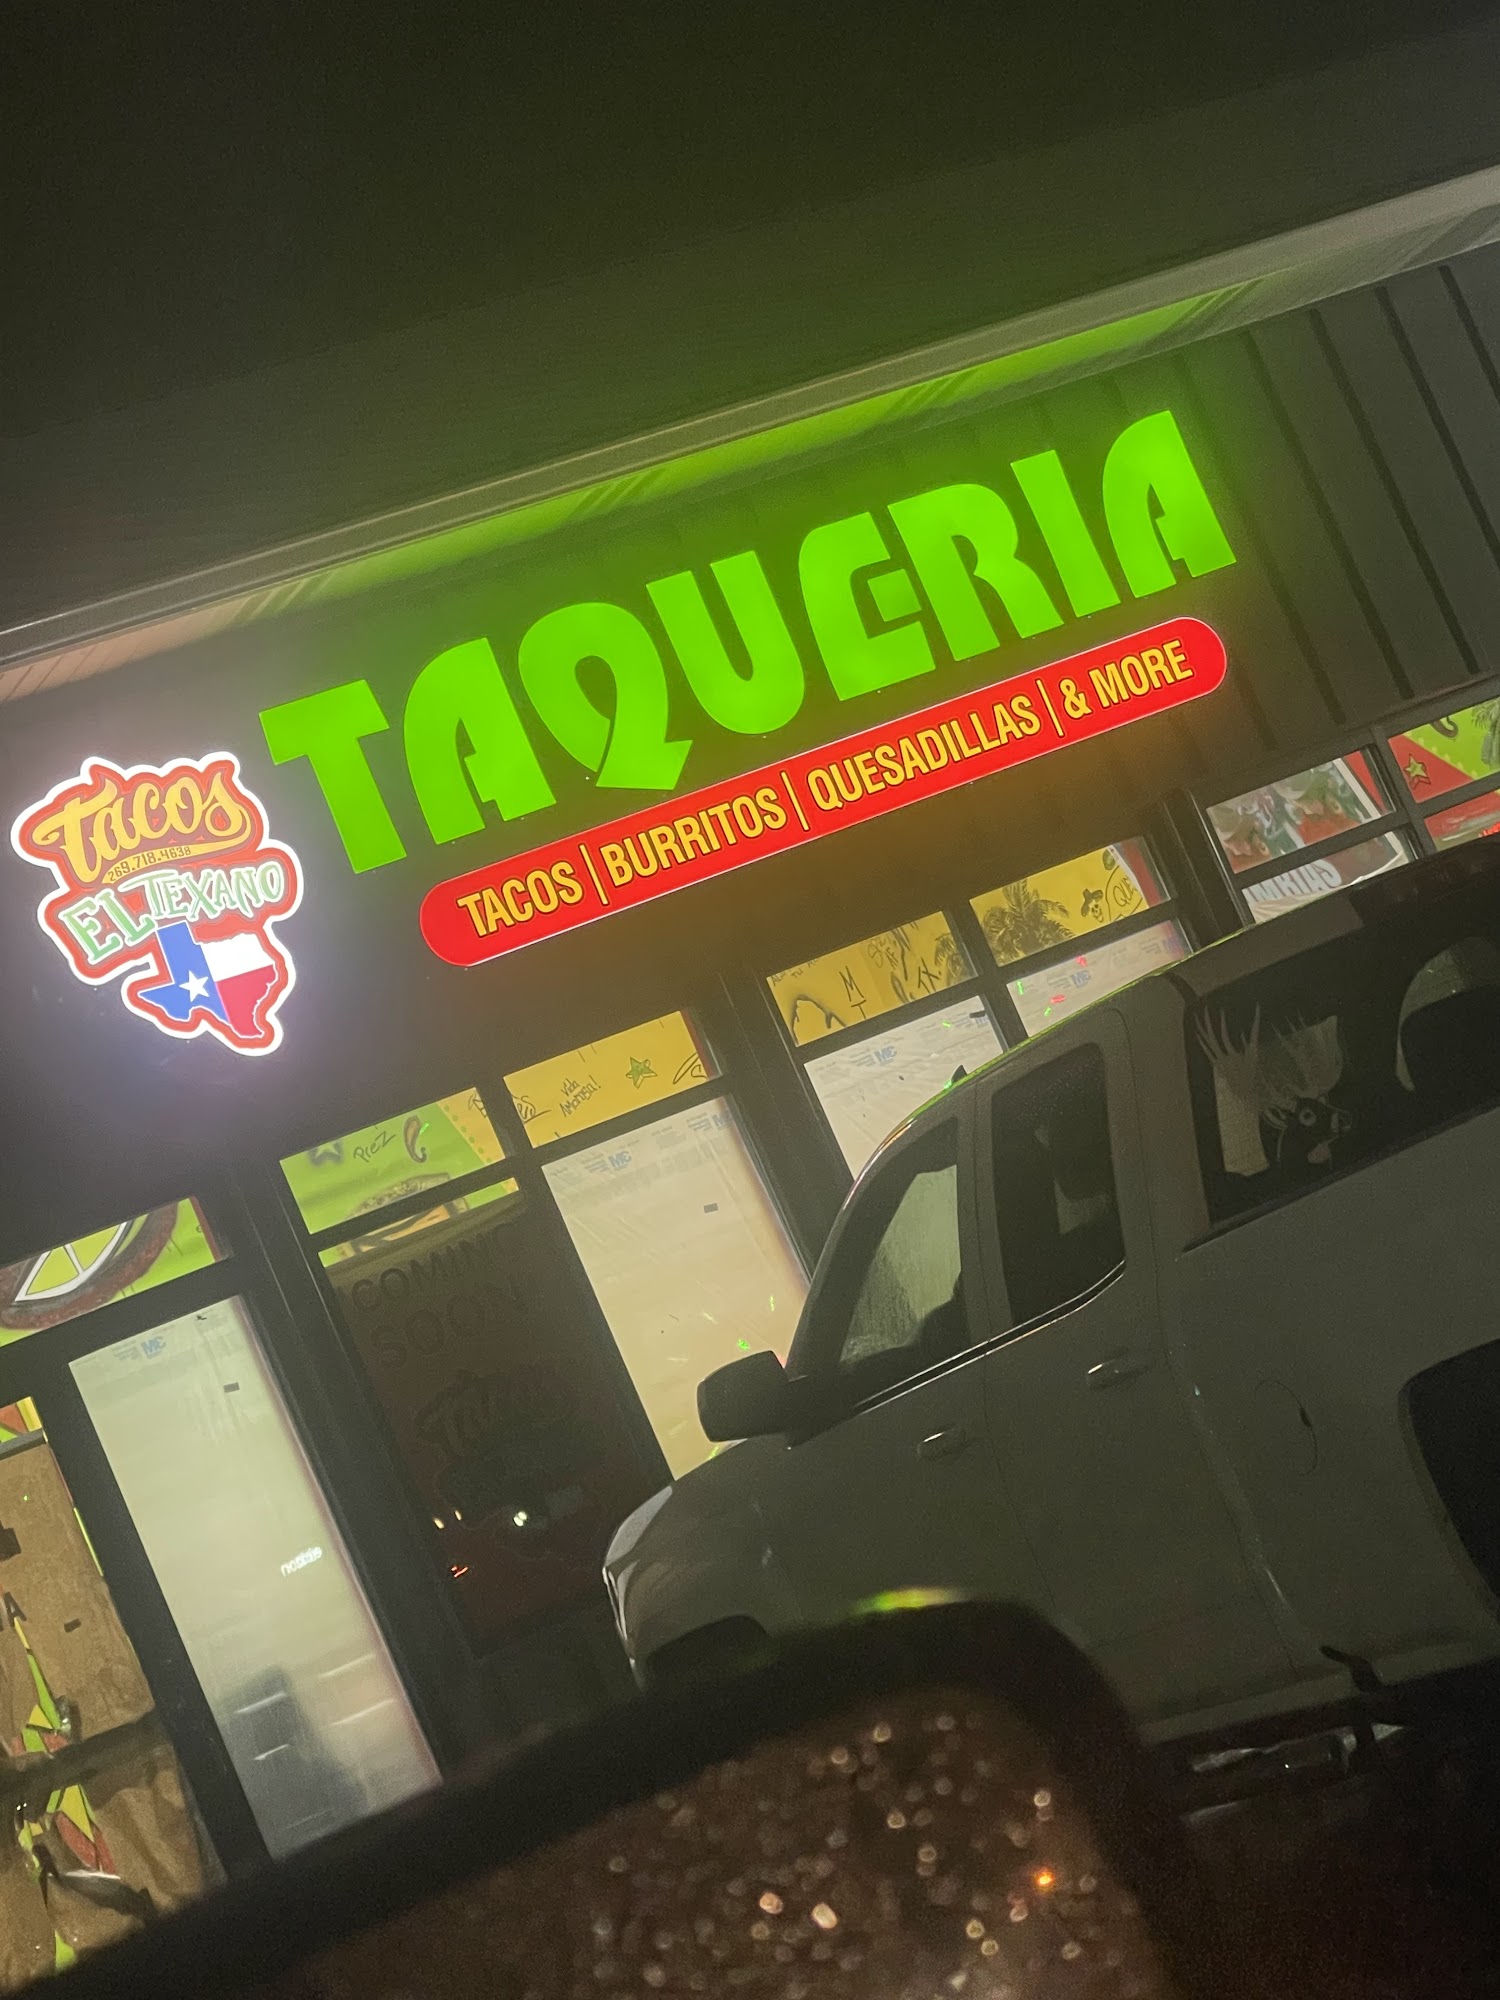 Taqueria El Tejano Food Truck